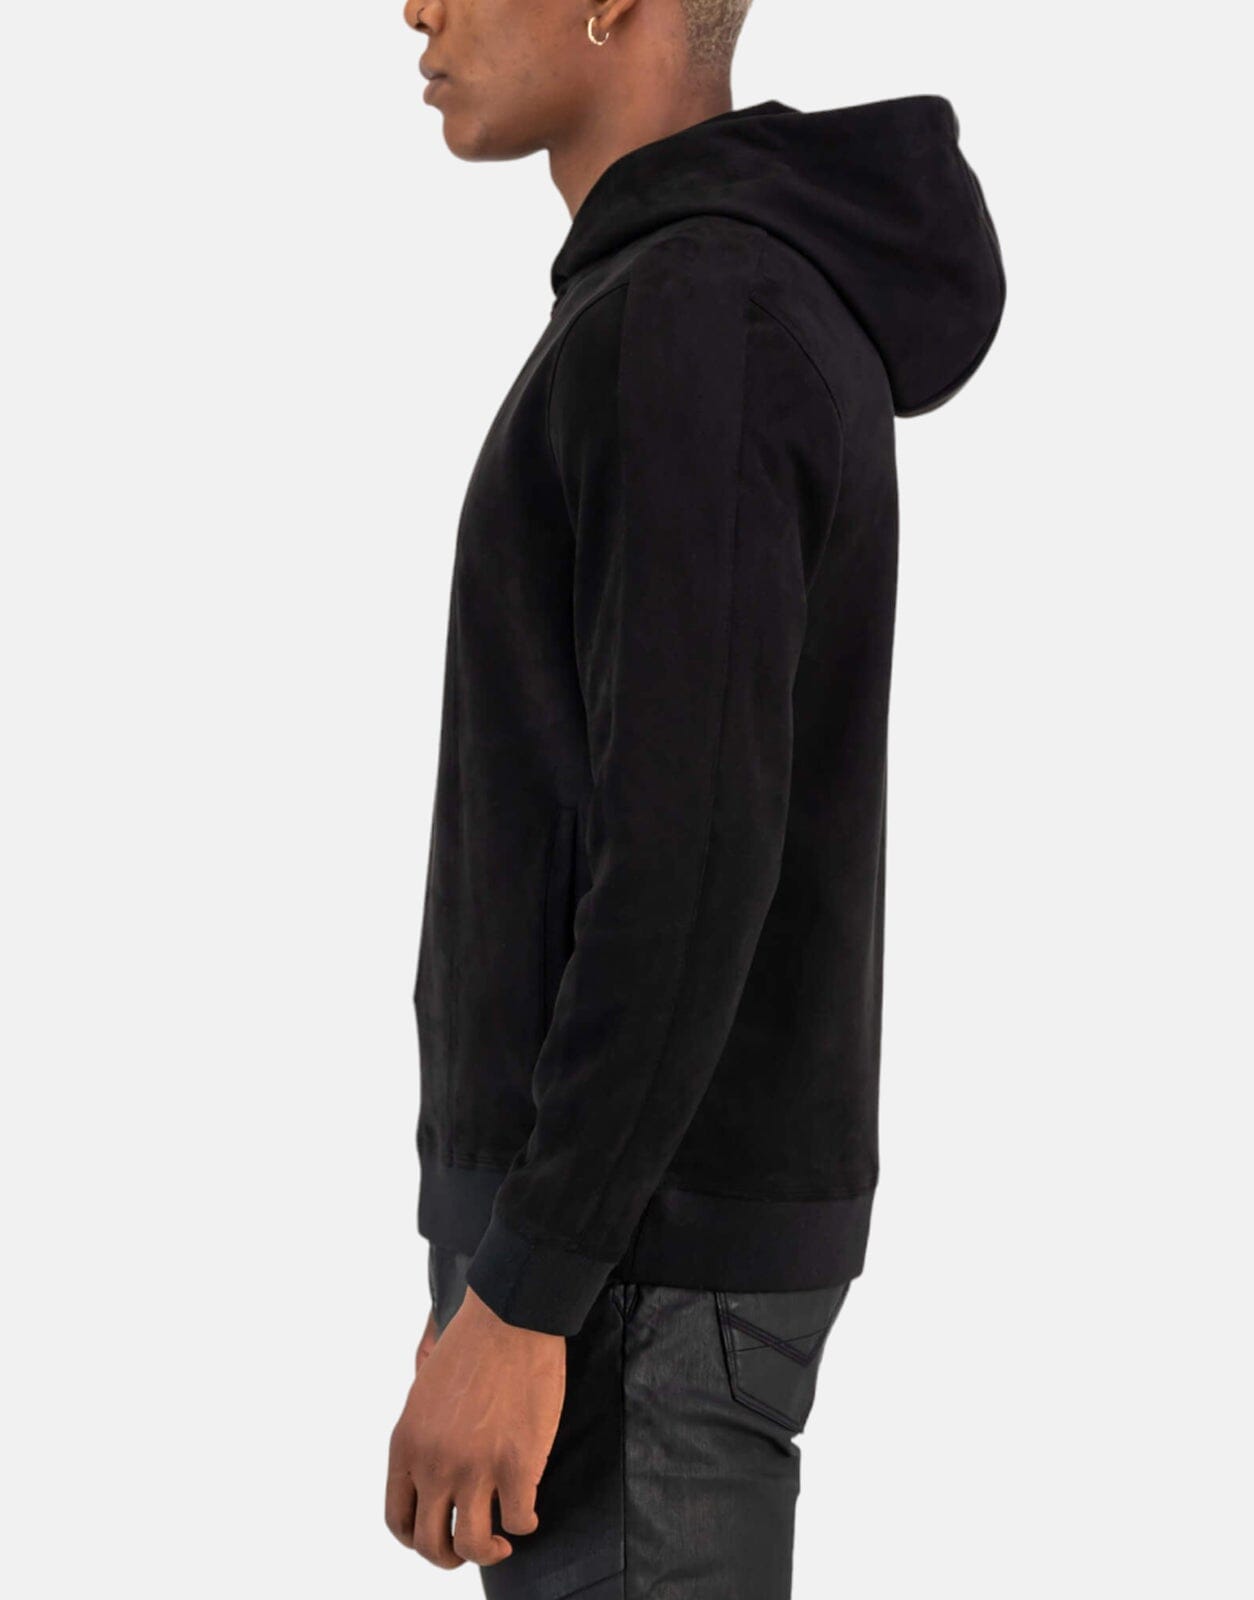 SPCC Ryker Black Hoodie - Subwear